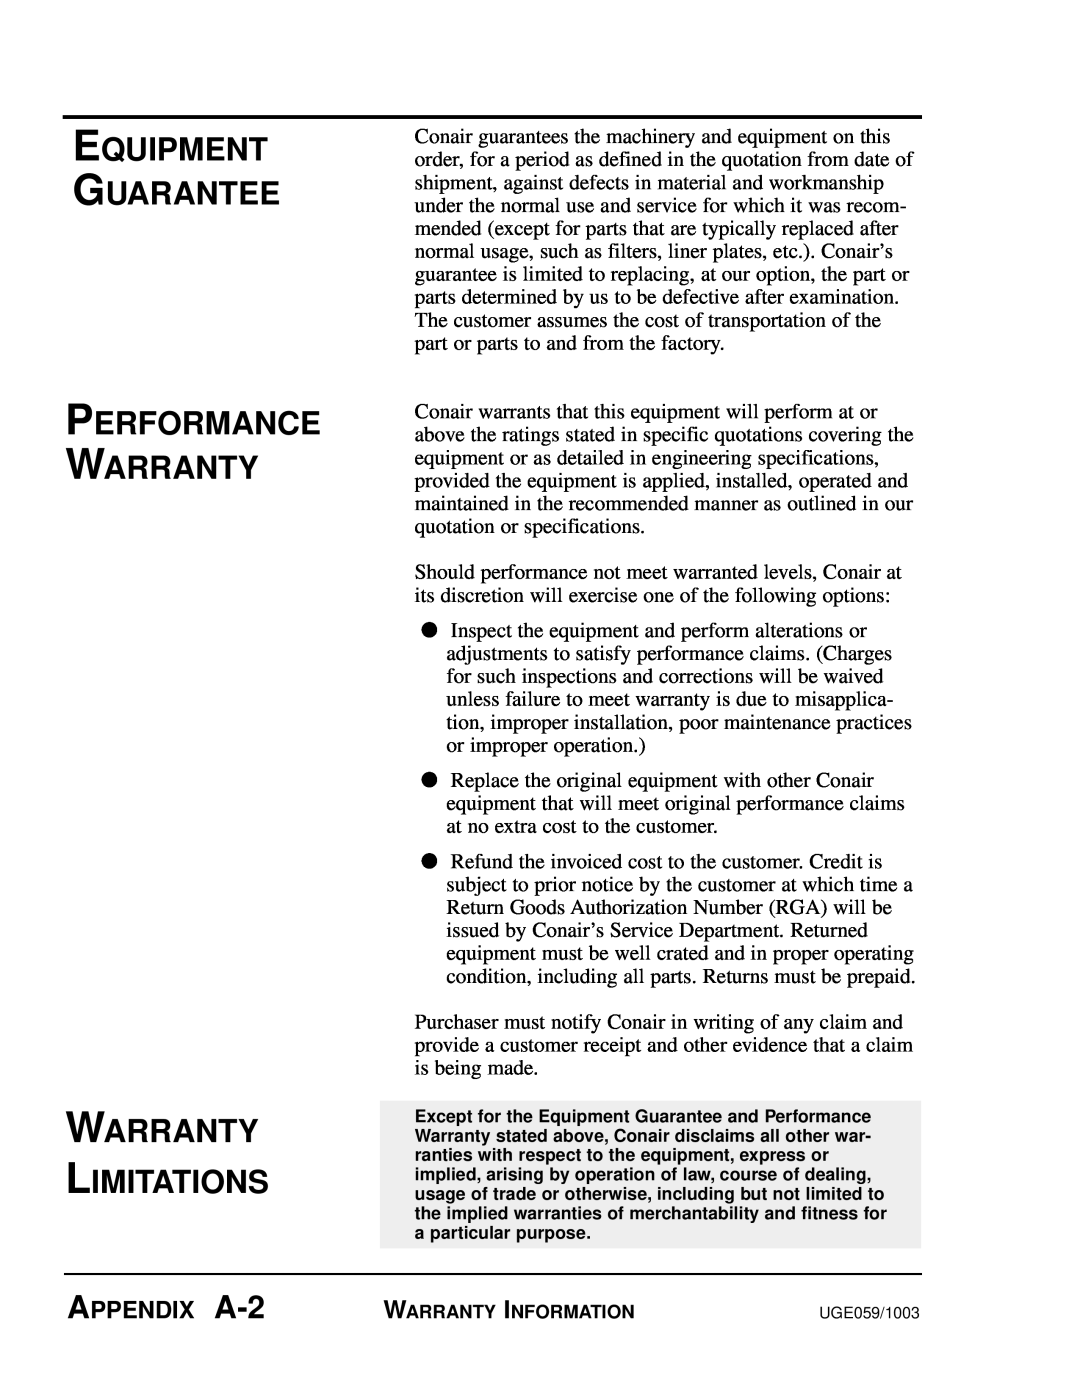 Conair SC-5 manual Equipment Guarantee Performance Warranty Warranty Limitations, APPENDIX A-2 